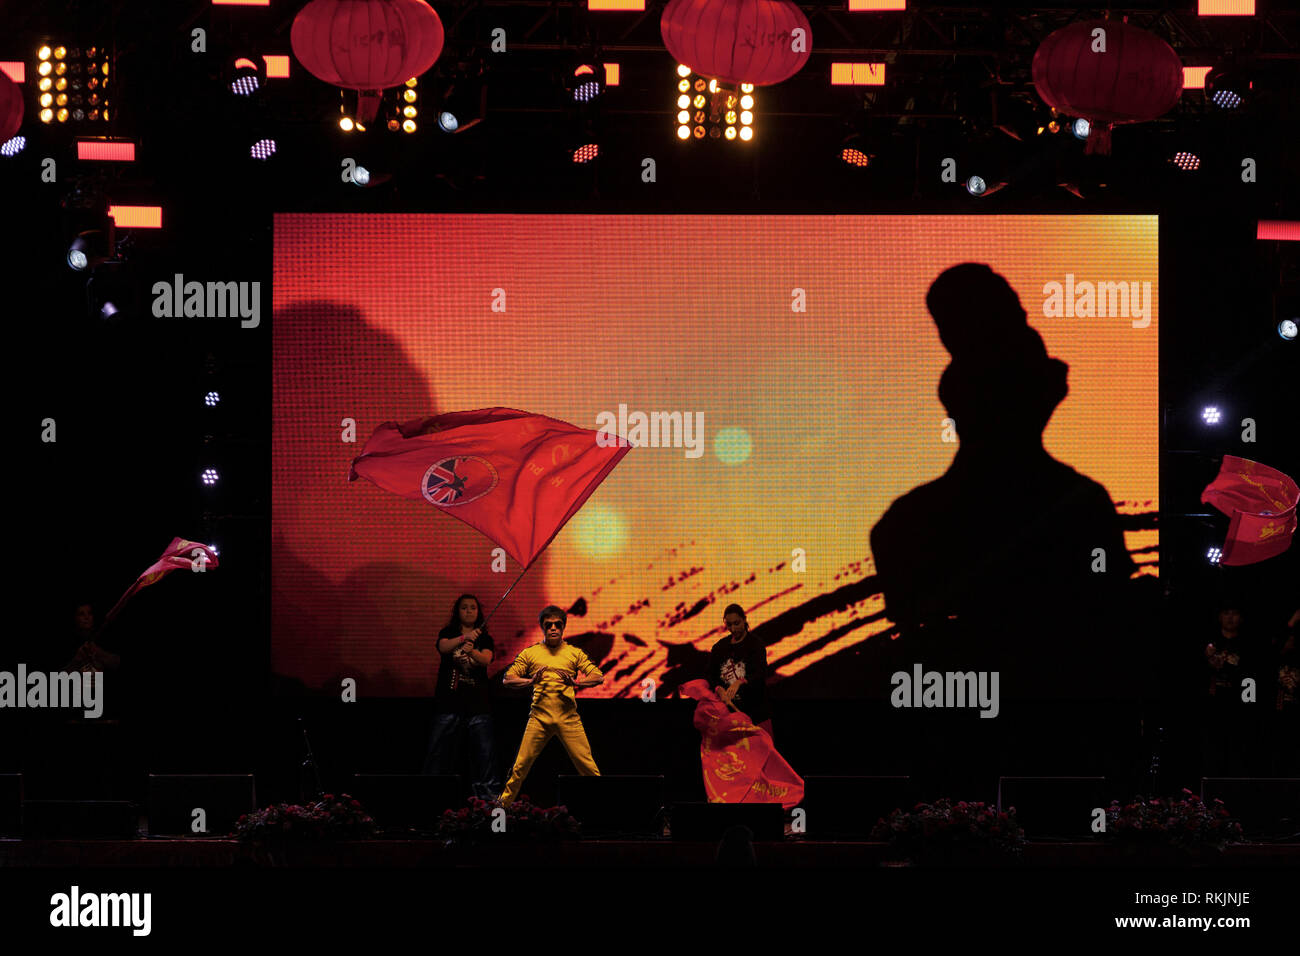 Londres, Reino Unido, 10 de febrero, 2019. Celebración del Año Nuevo Chino en Trafalgar Square, Londres, Reino Unido. Rendimiento de arte marcial por un grupo en el escenario. Crédito: Harishkumar Shah/Alamy Live News Foto de stock